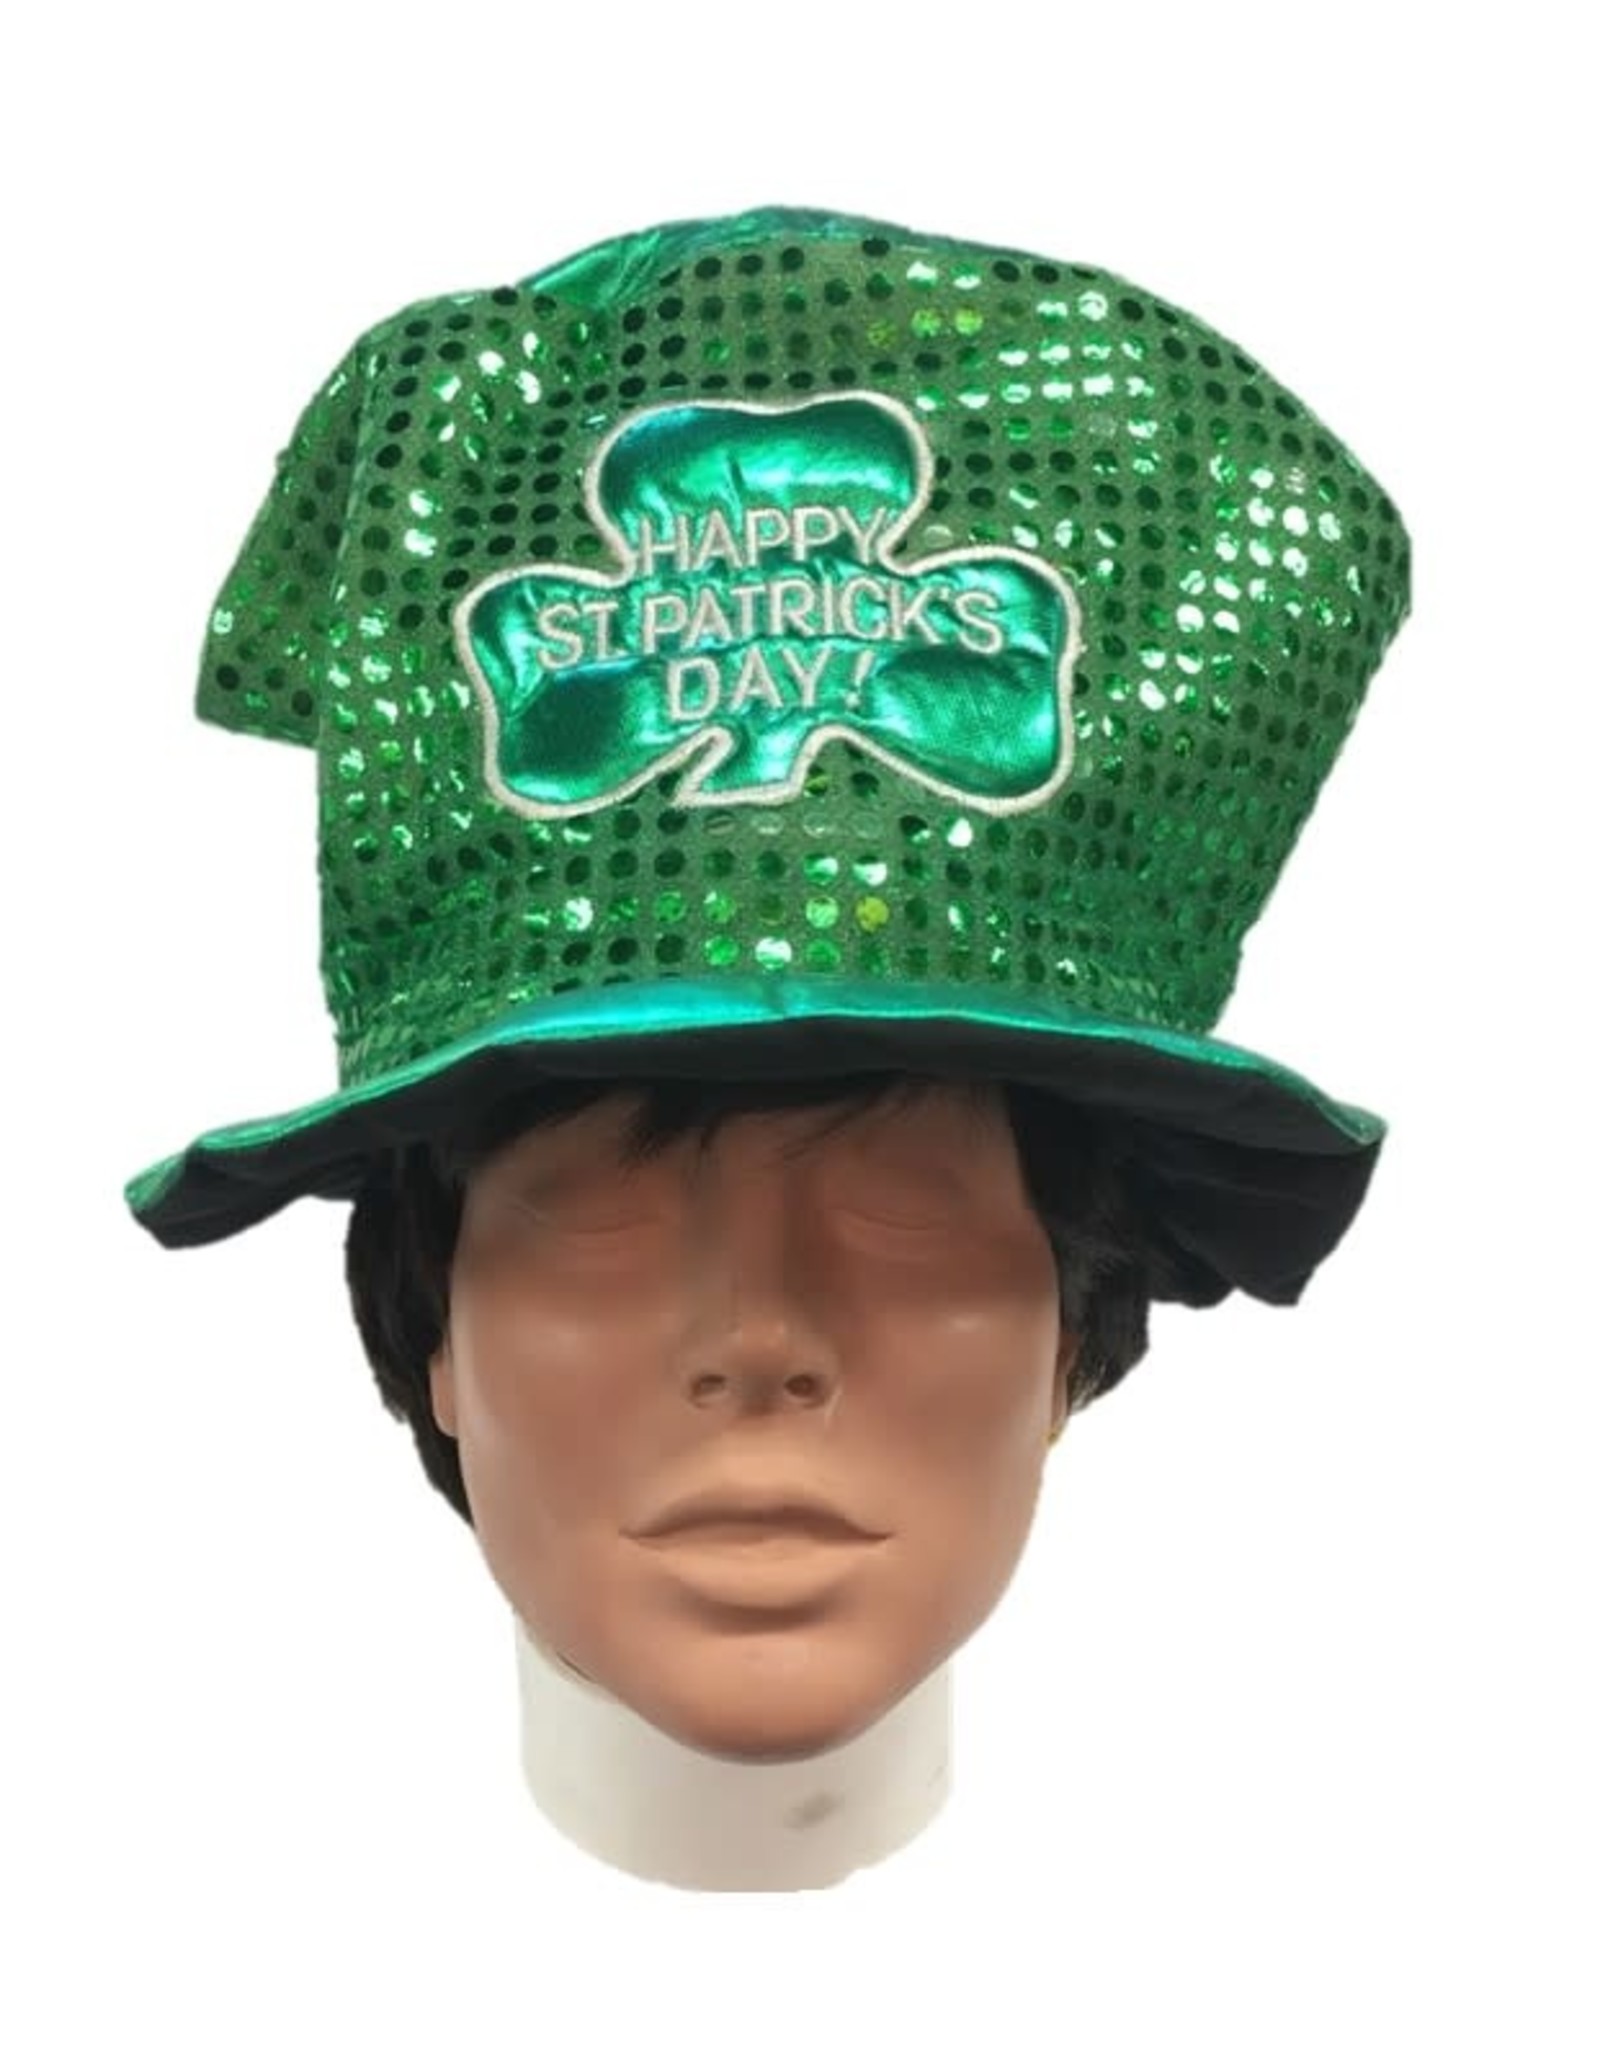 Beistle "Happy St. Patrick's Day" Hat